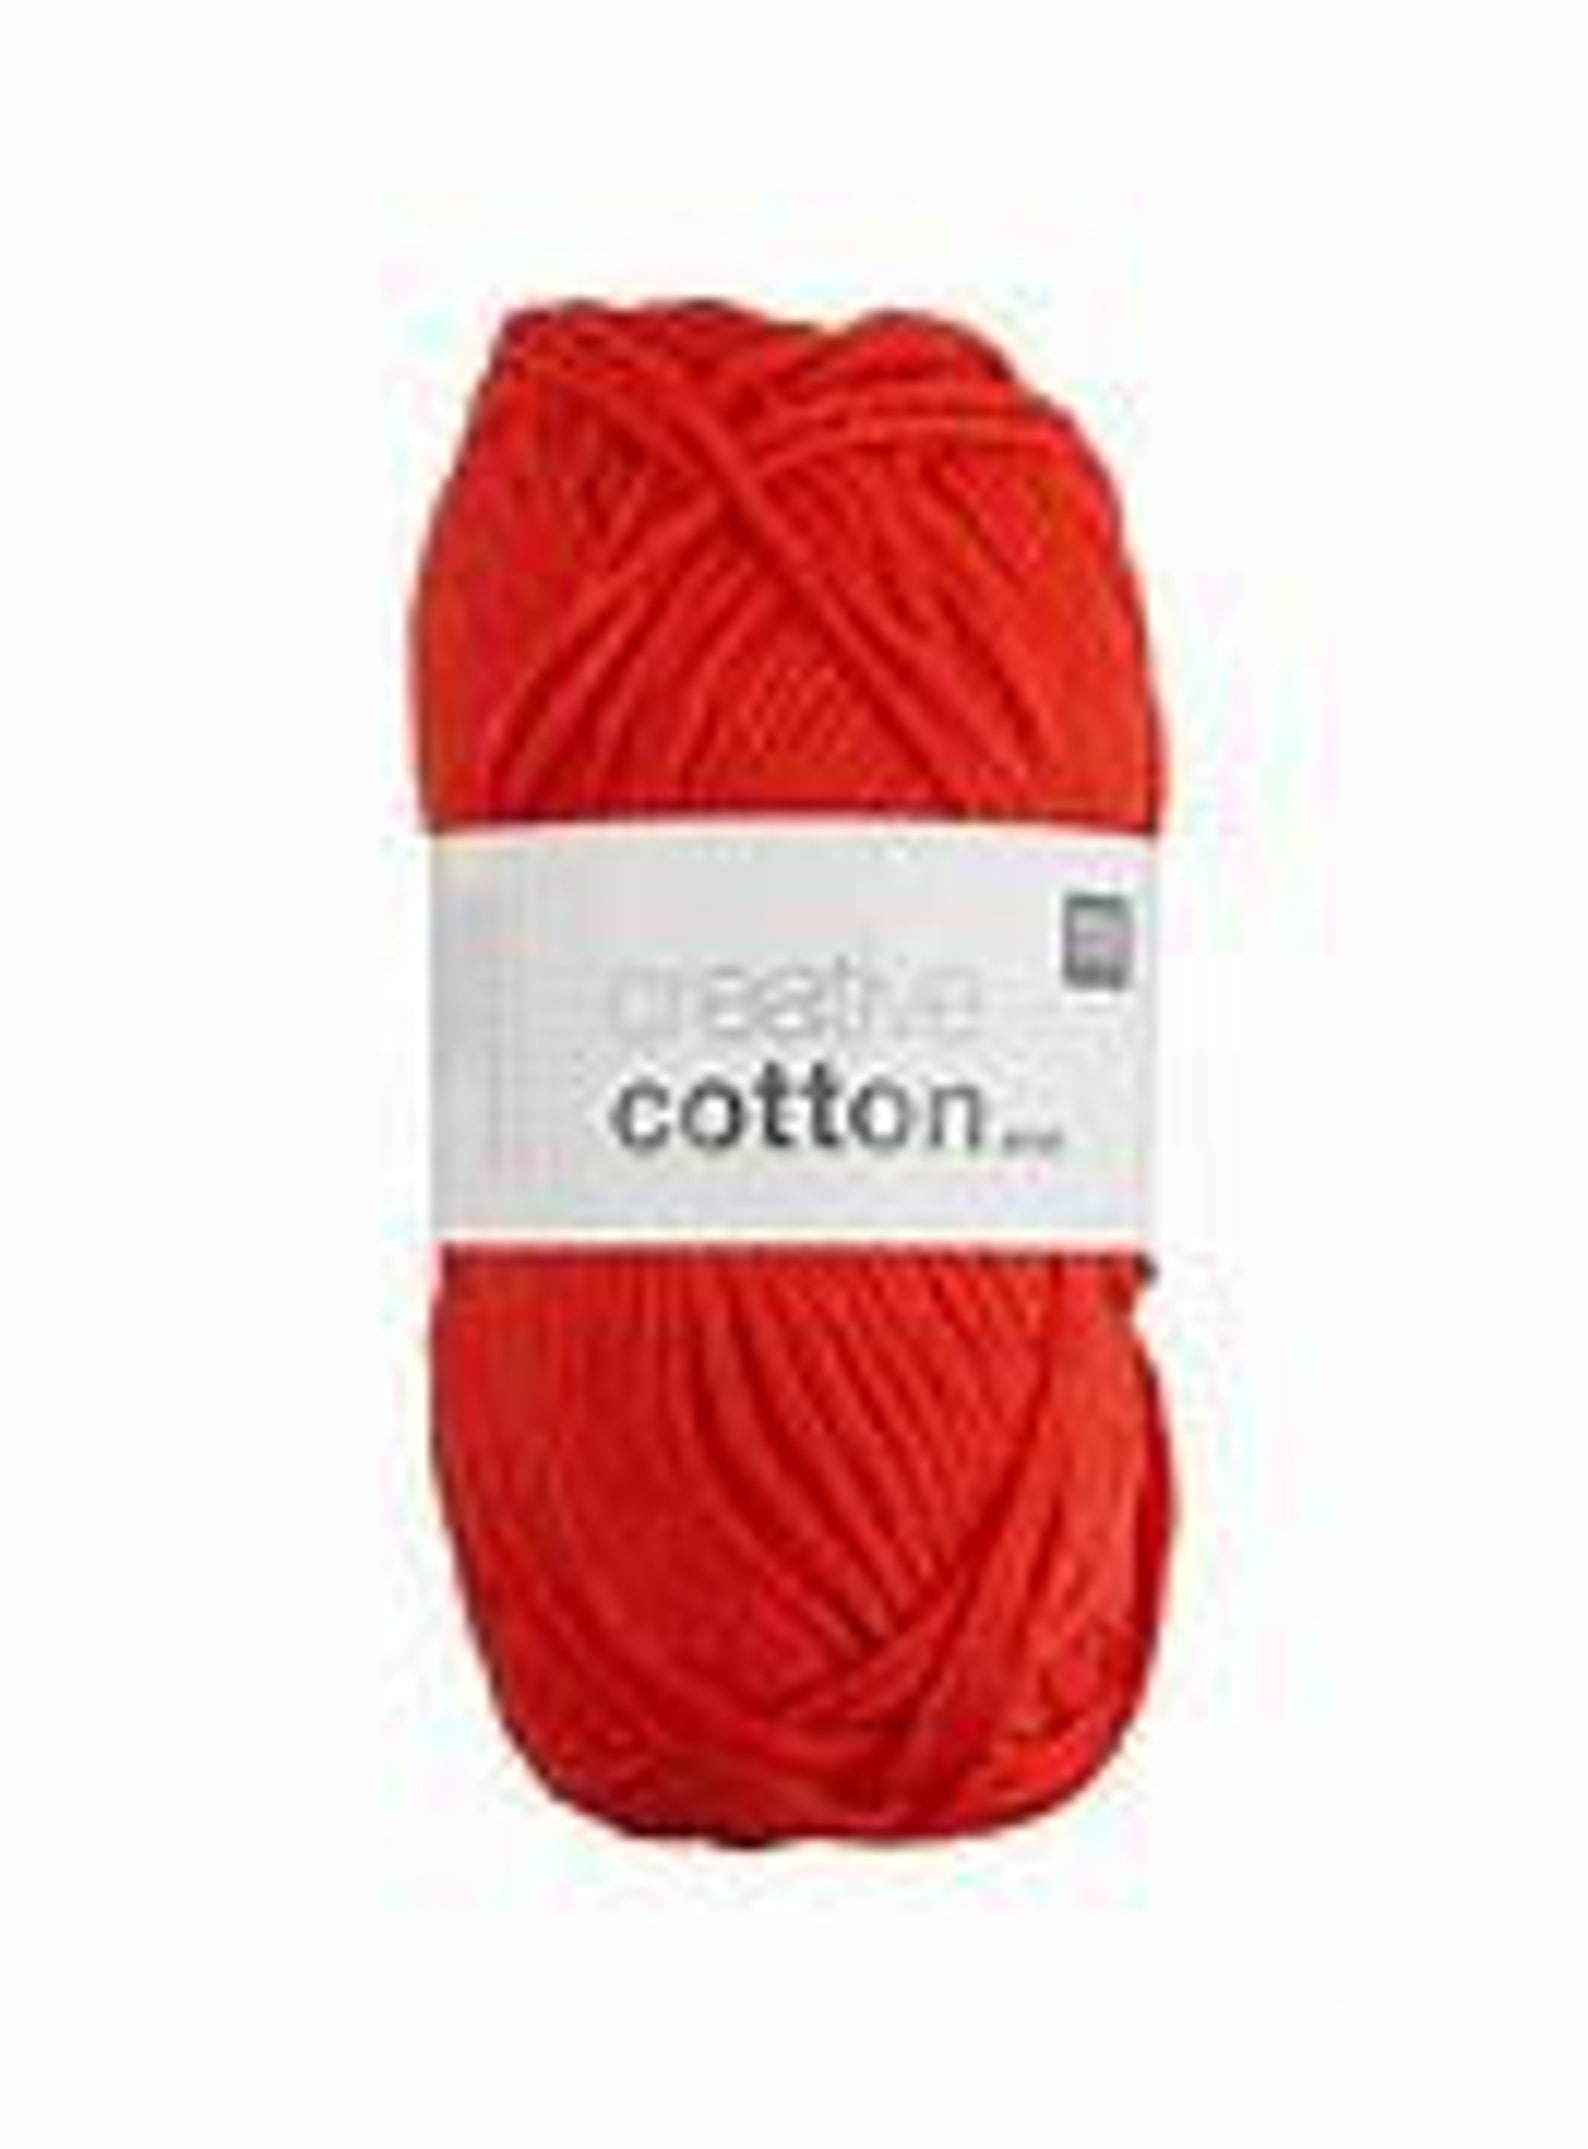 Red Cotton yarn Rico Design Creative Cotton Aran yarn 50 g | Etsy